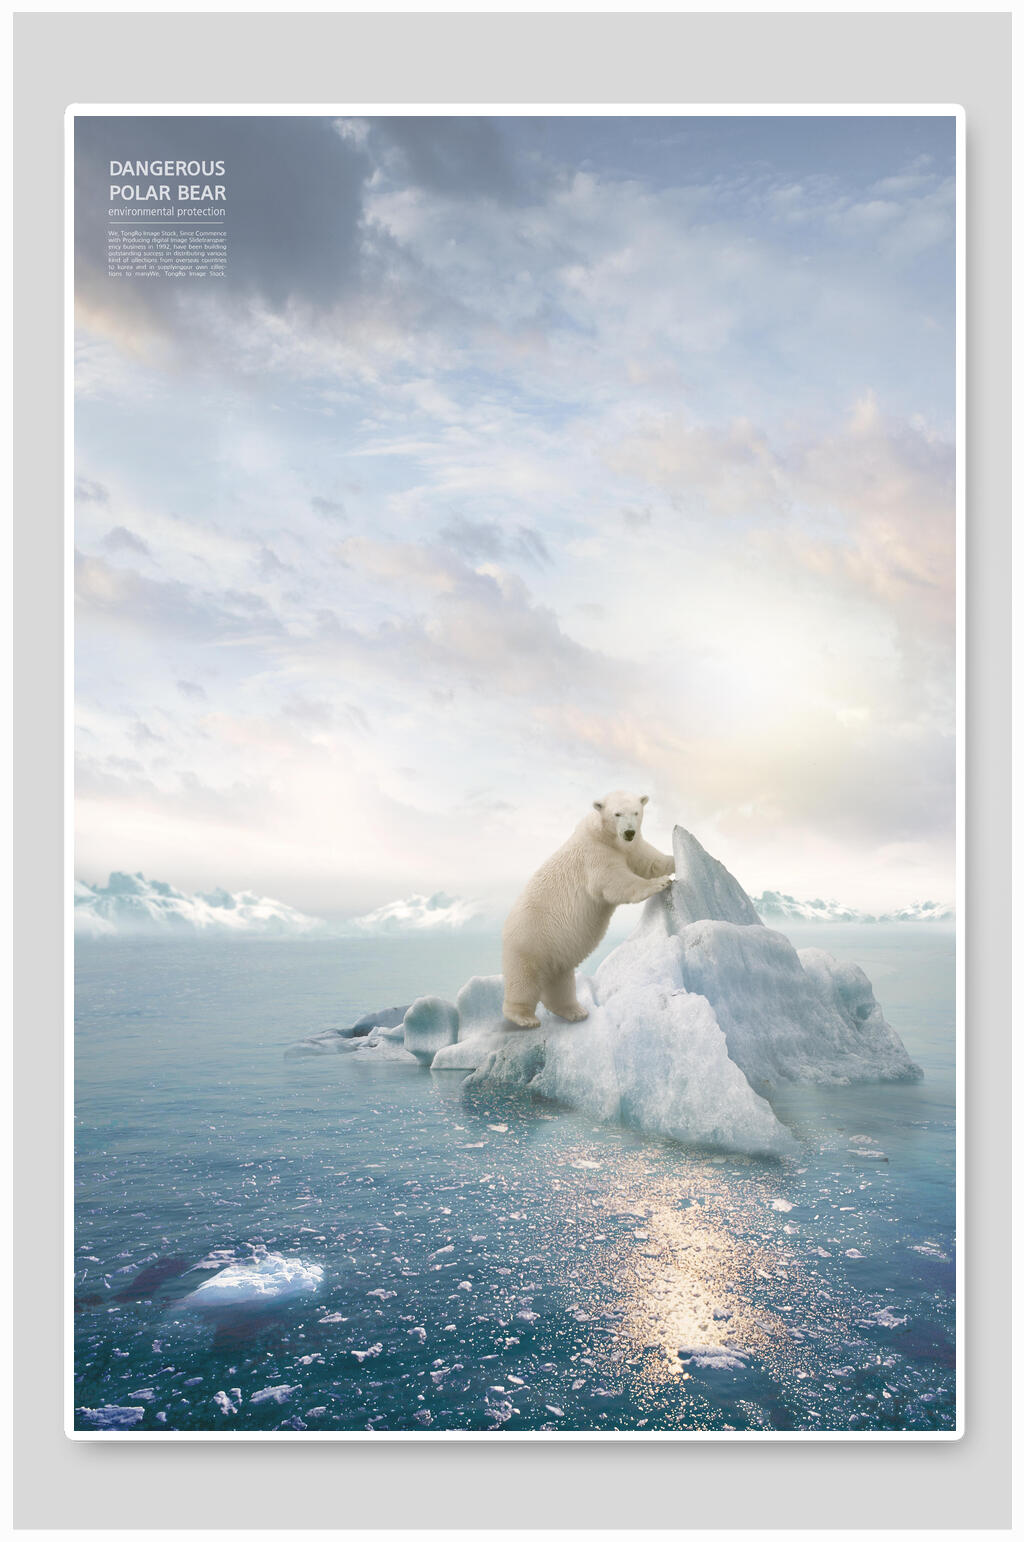 保护北极熊的宣传语言图片